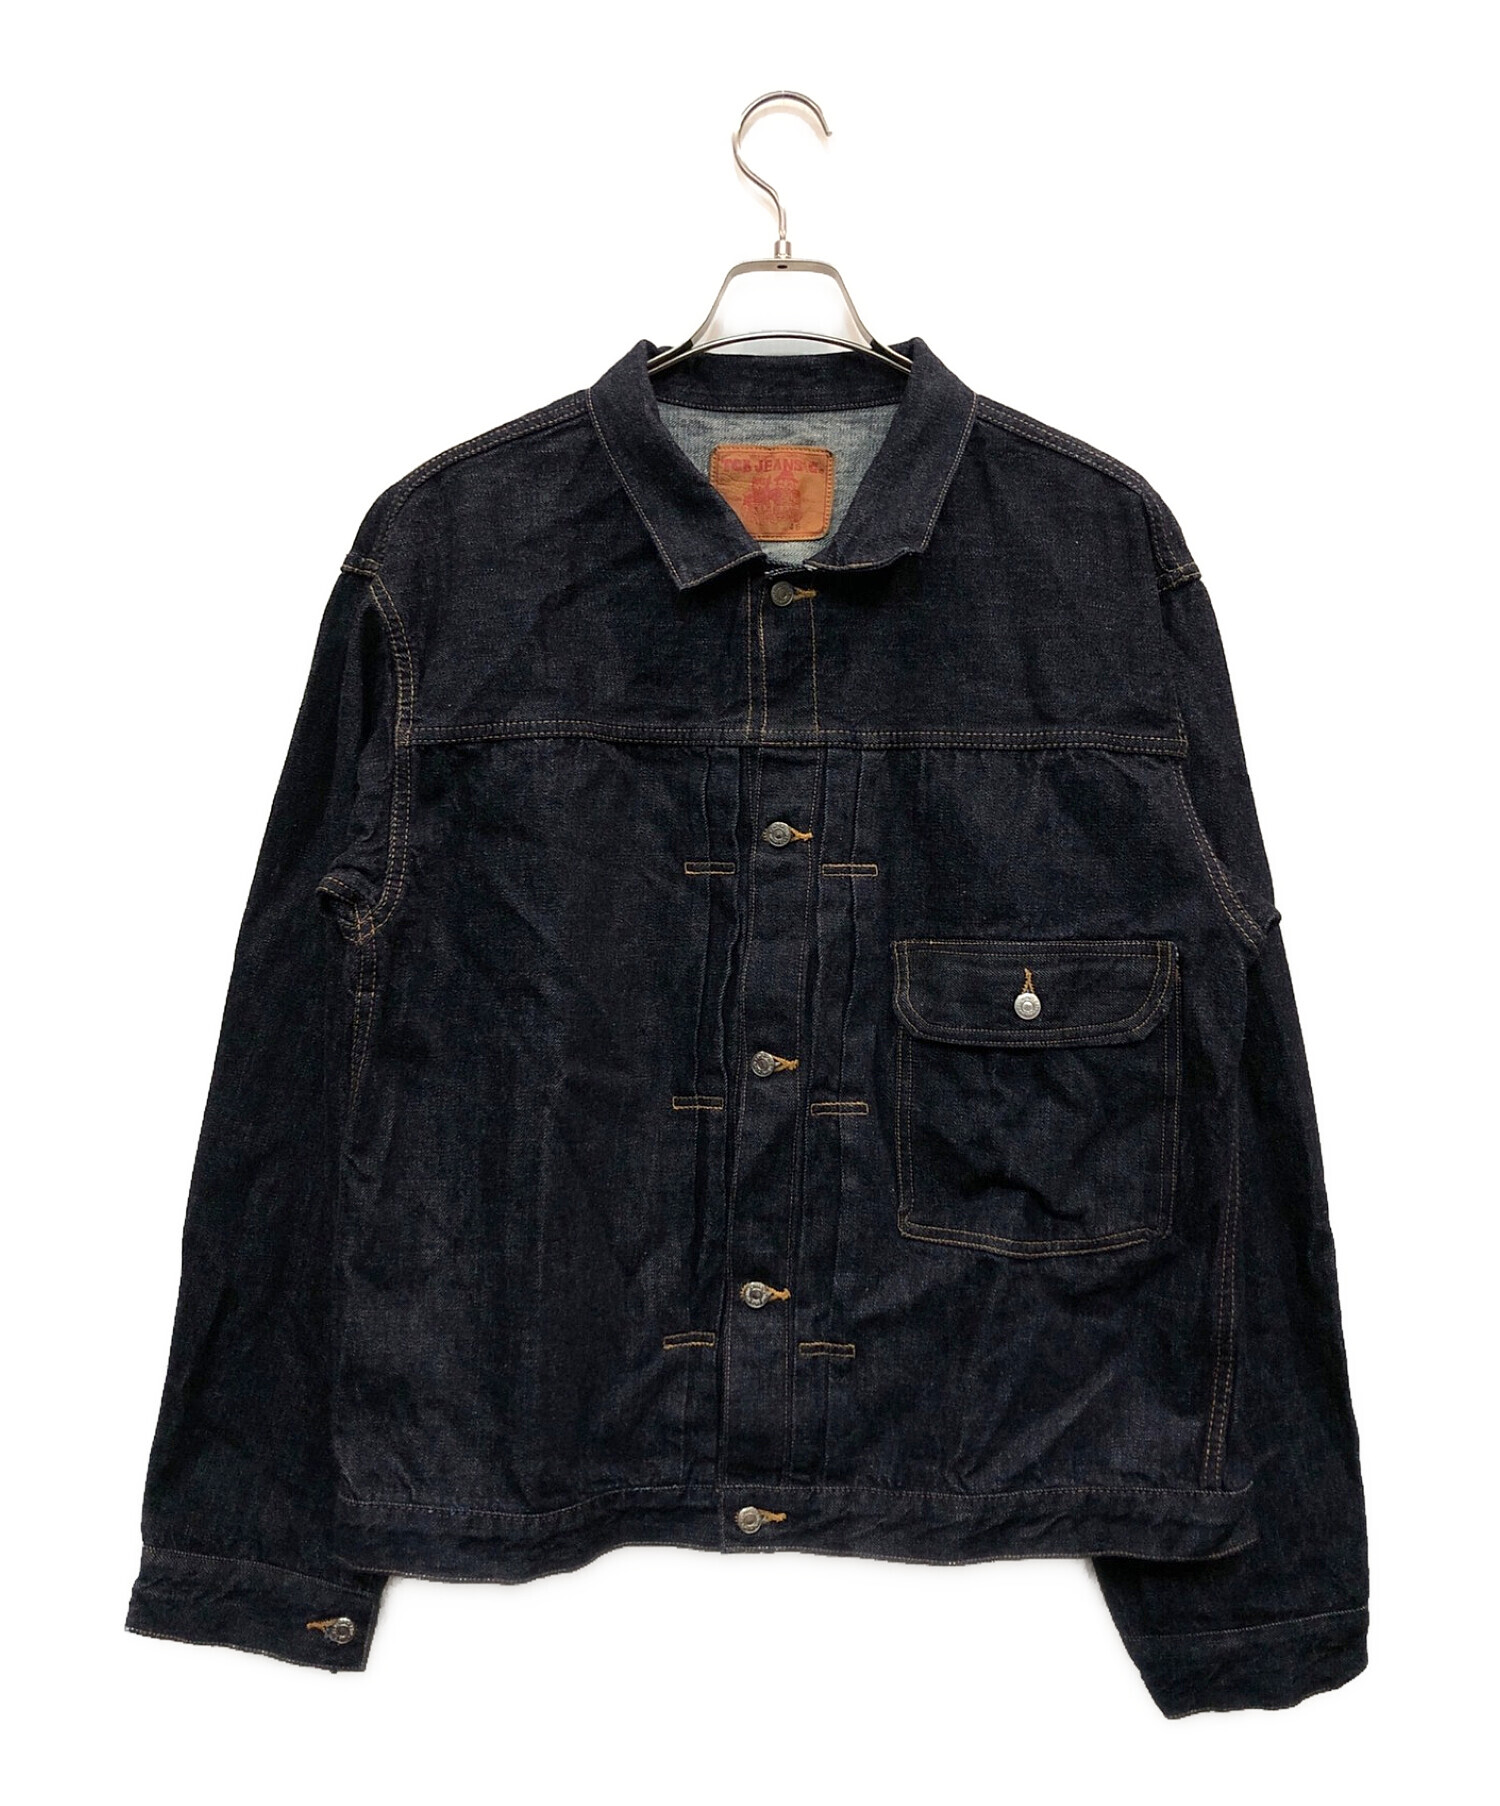 TCB ジーンズ 30's jacket サイズ46 - Gジャン/デニムジャケット